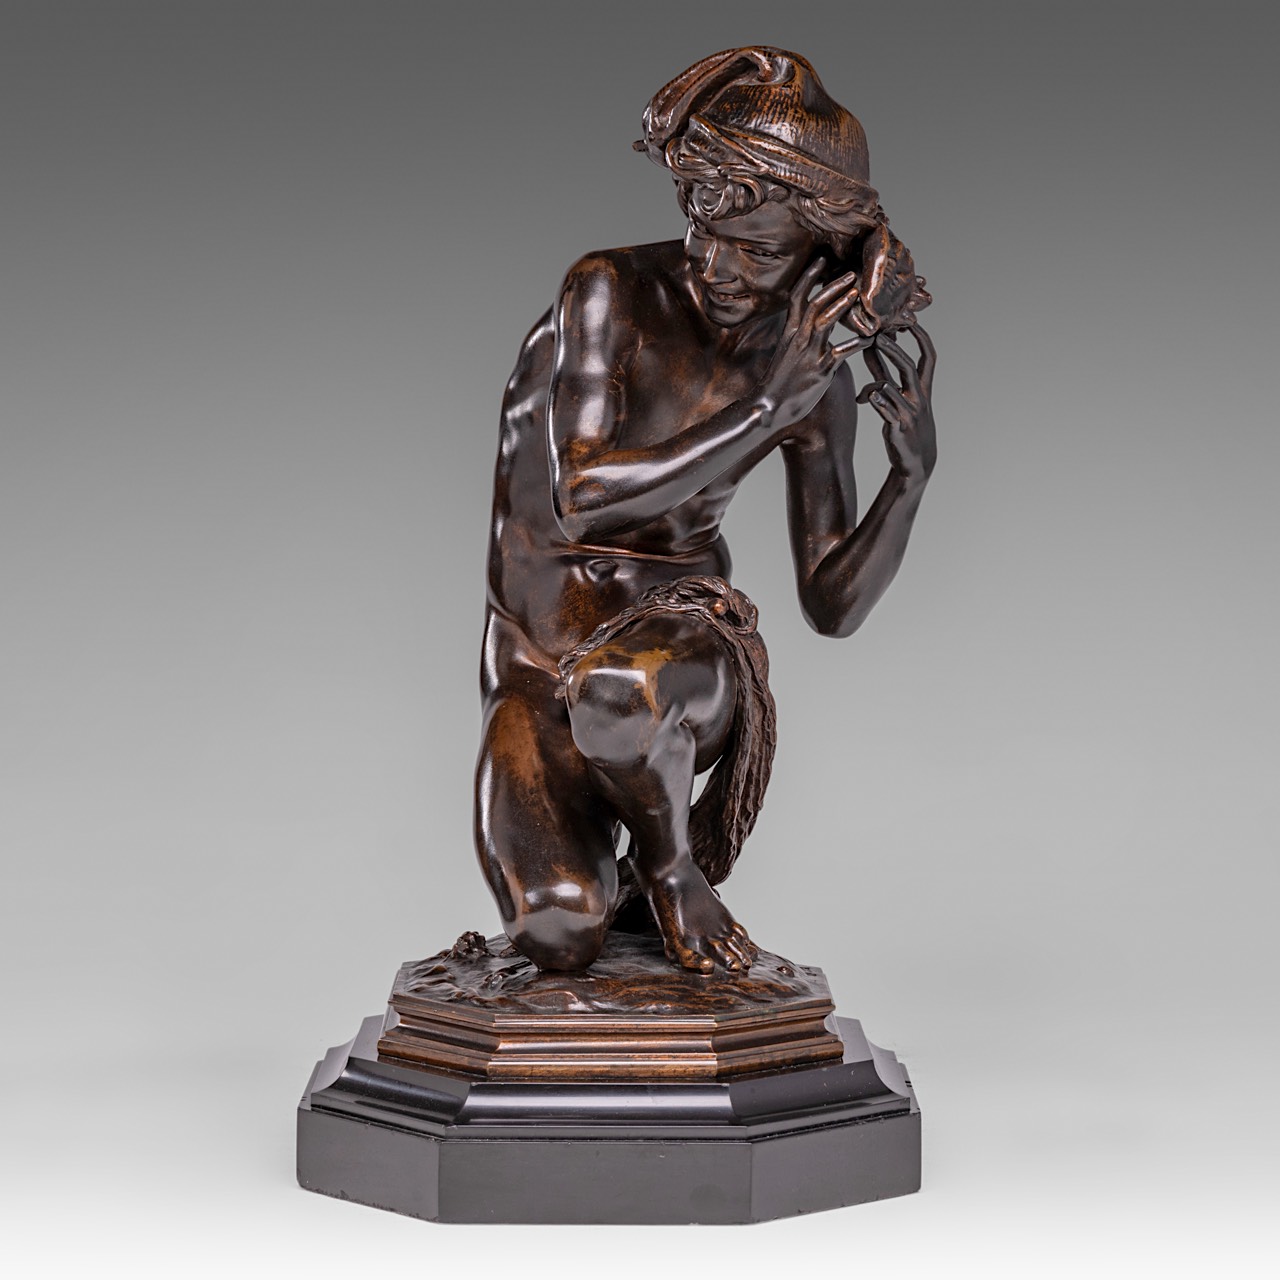 Jean-Baptiste Carpeaux (1827-1875), 'Pecheur a la coquille' (Neapolitan Fisher Boy), patinated bronz